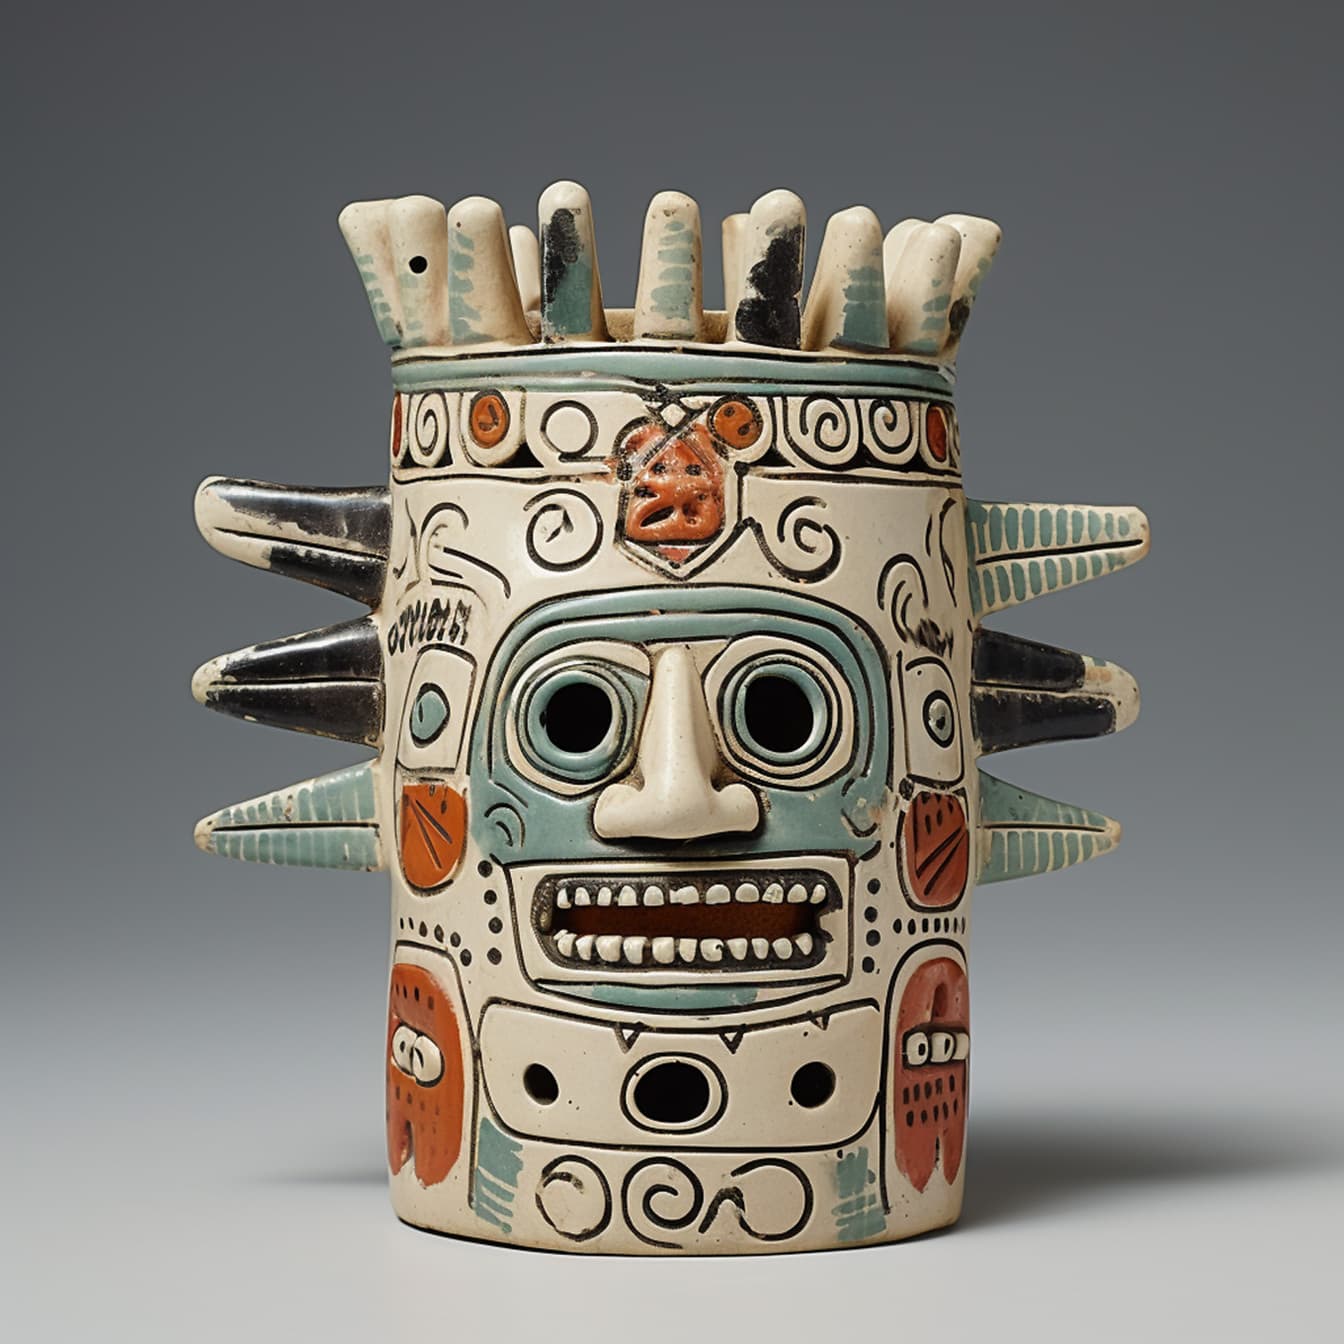 Pasztell színek hagyományos, kézzel készített prekolumbiánus figura